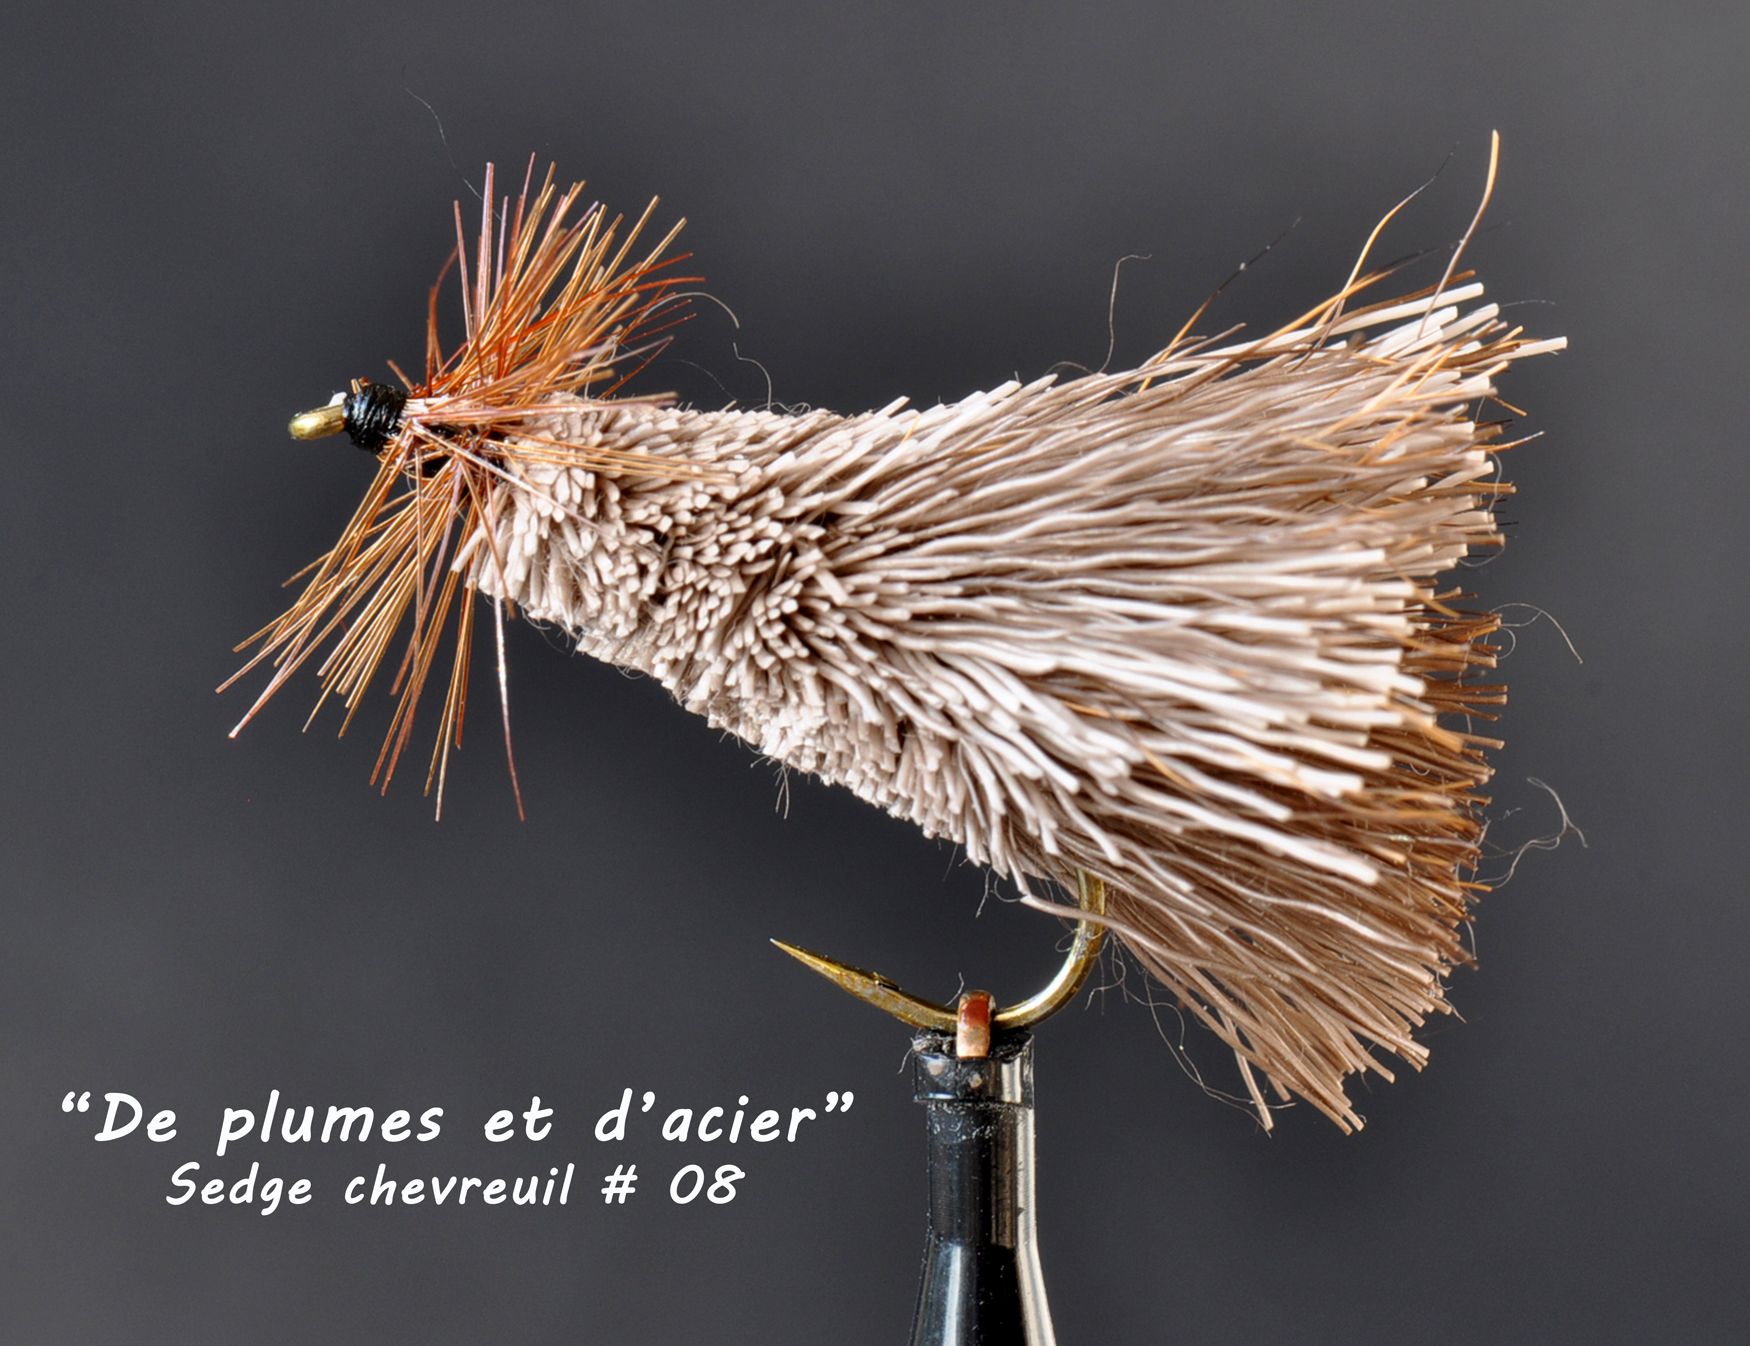 Mouches "De plumes et d'acier" Sedge chevreuil # 08